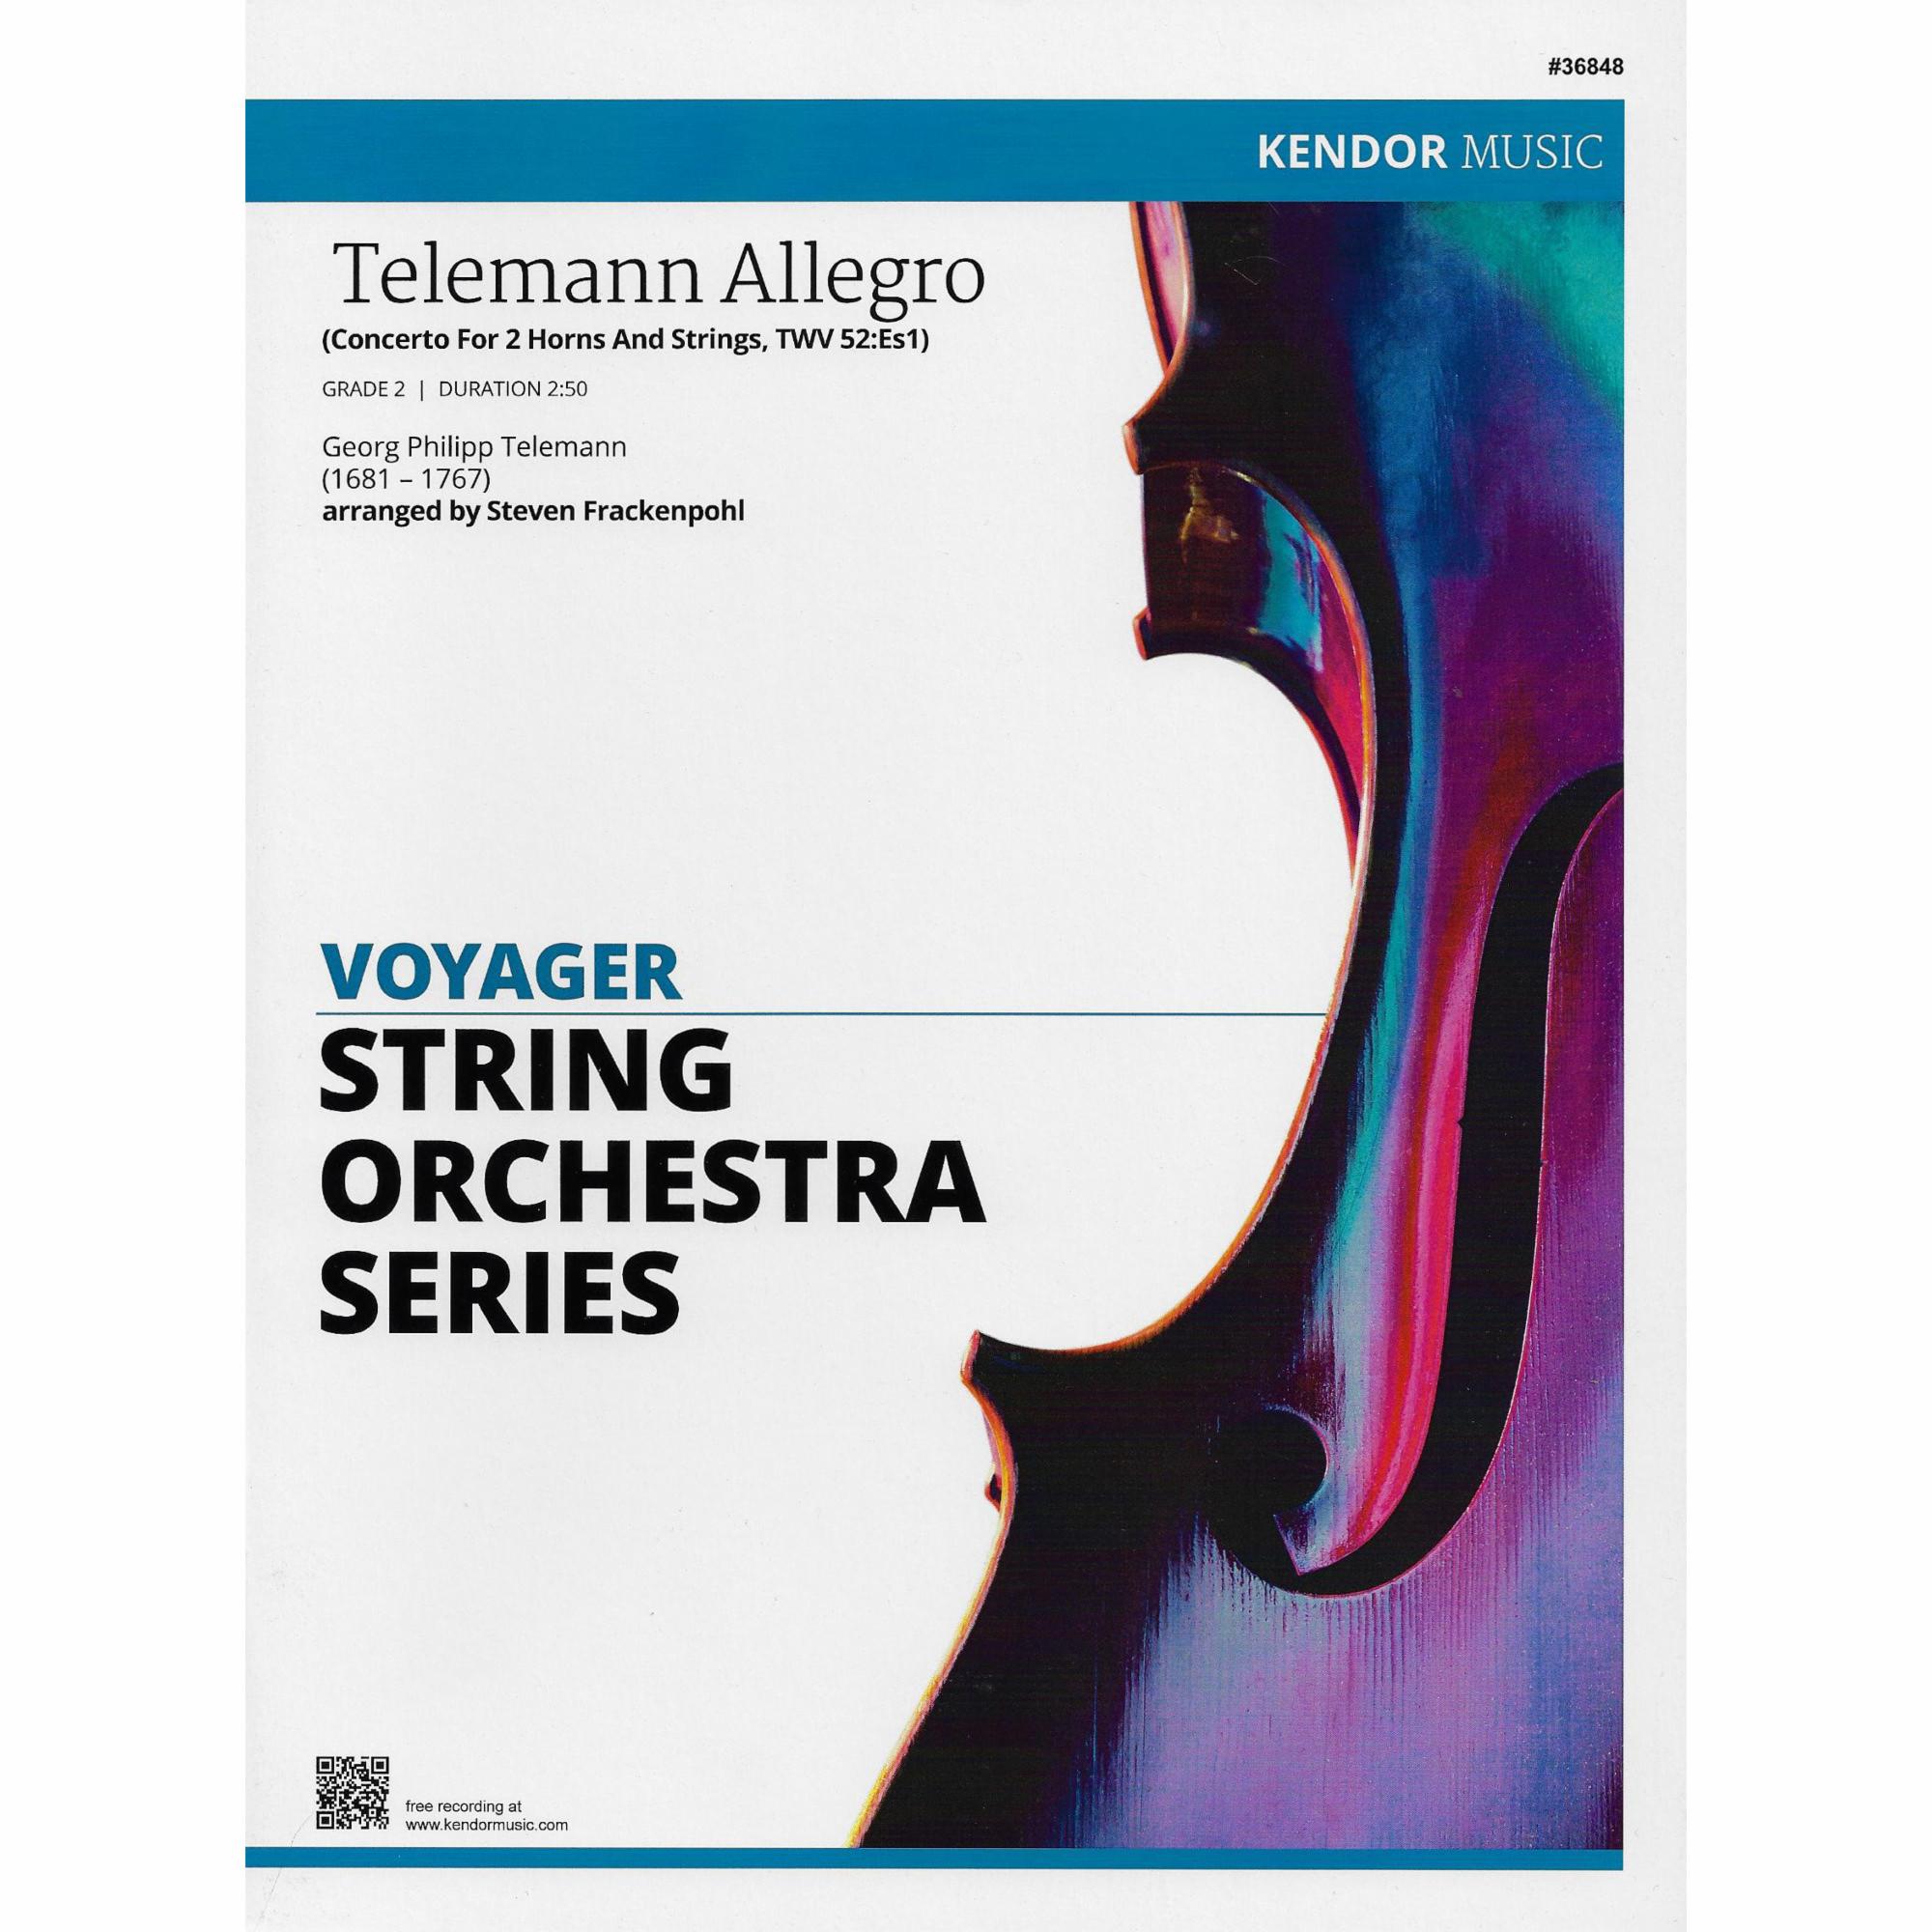 Telemann Allegro for String Orchestra